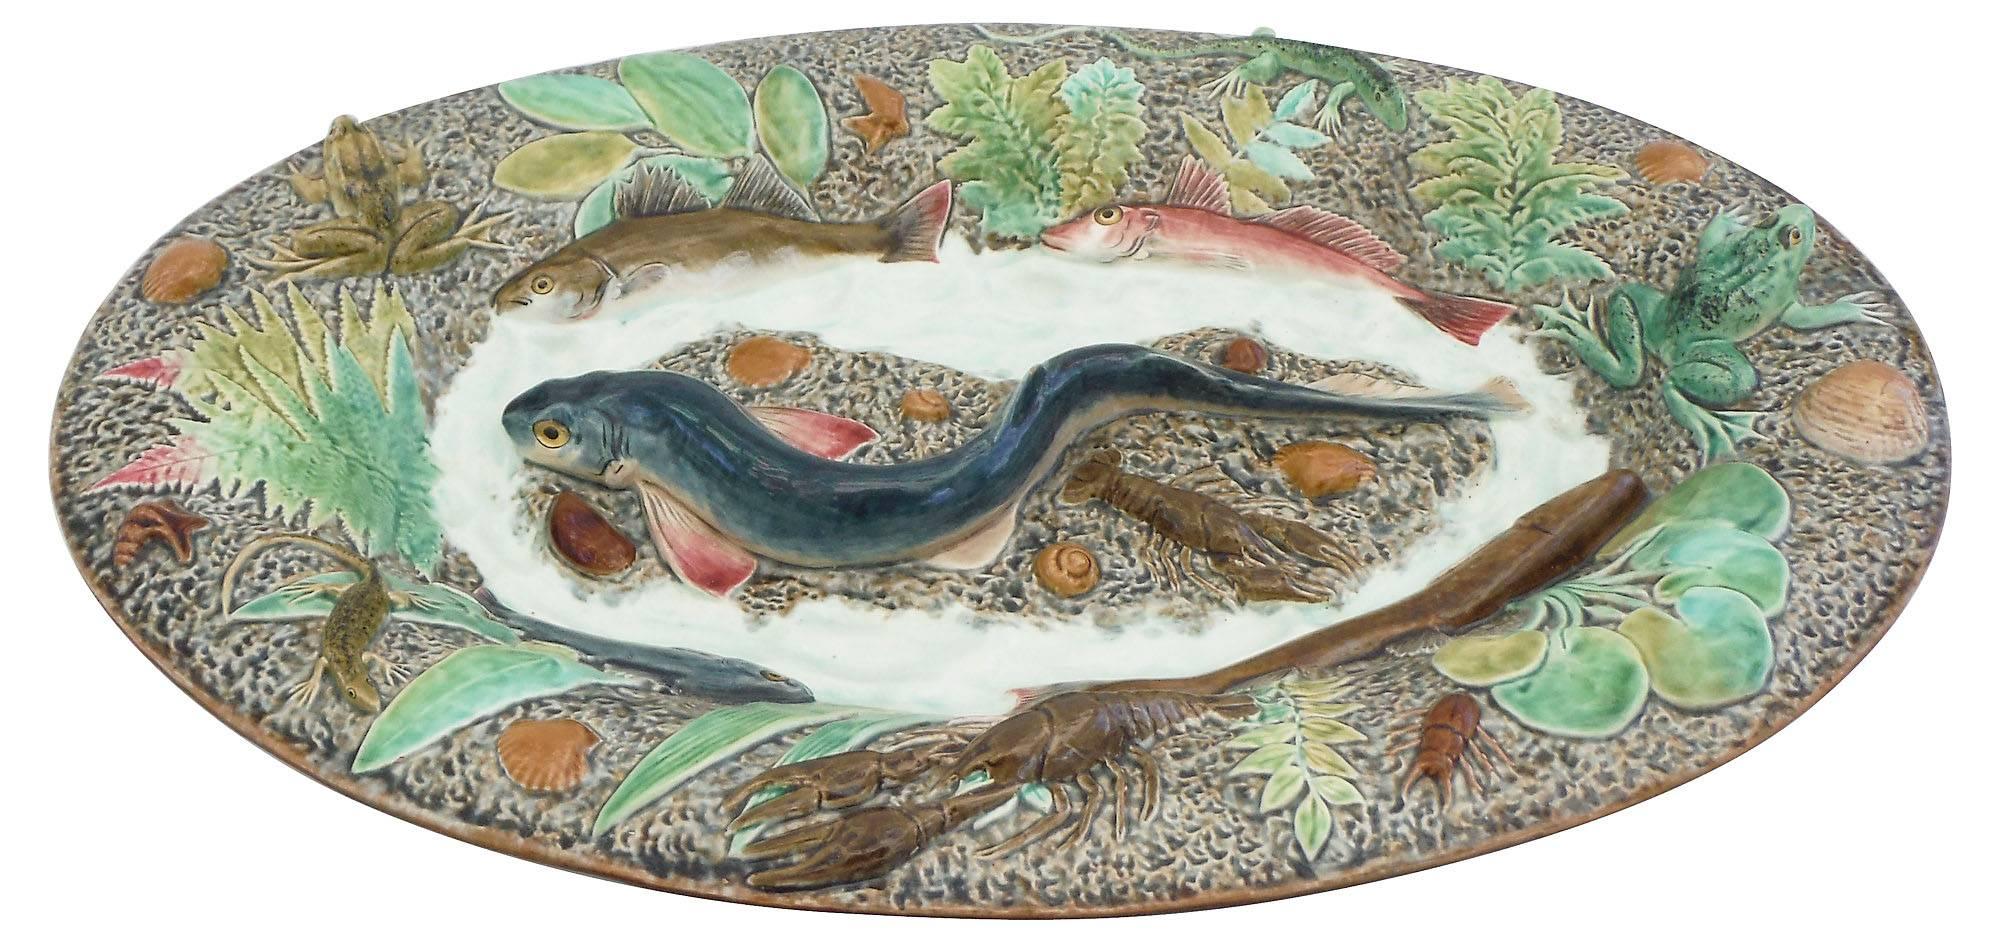 Großer Wandteller aus Palissy mit einem großen Katzenhai in der Mitte, umgeben von vier Fischen, zwei Fröschen, zwei Langusten, zwei Eidechsen, Muscheln und verschiedenen Grünpflanzen, um 1900. Dieser Teller ist von einem Teller von Thomas Sergent